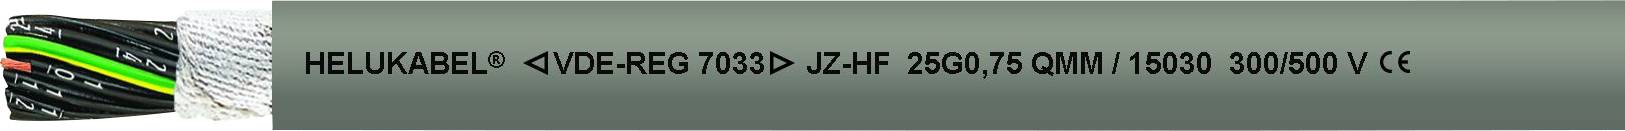 HELUKABEL 15002-1000 Schleppkettenleitung JZ-HF 3 G 0.50 mm² Grau 1000 m